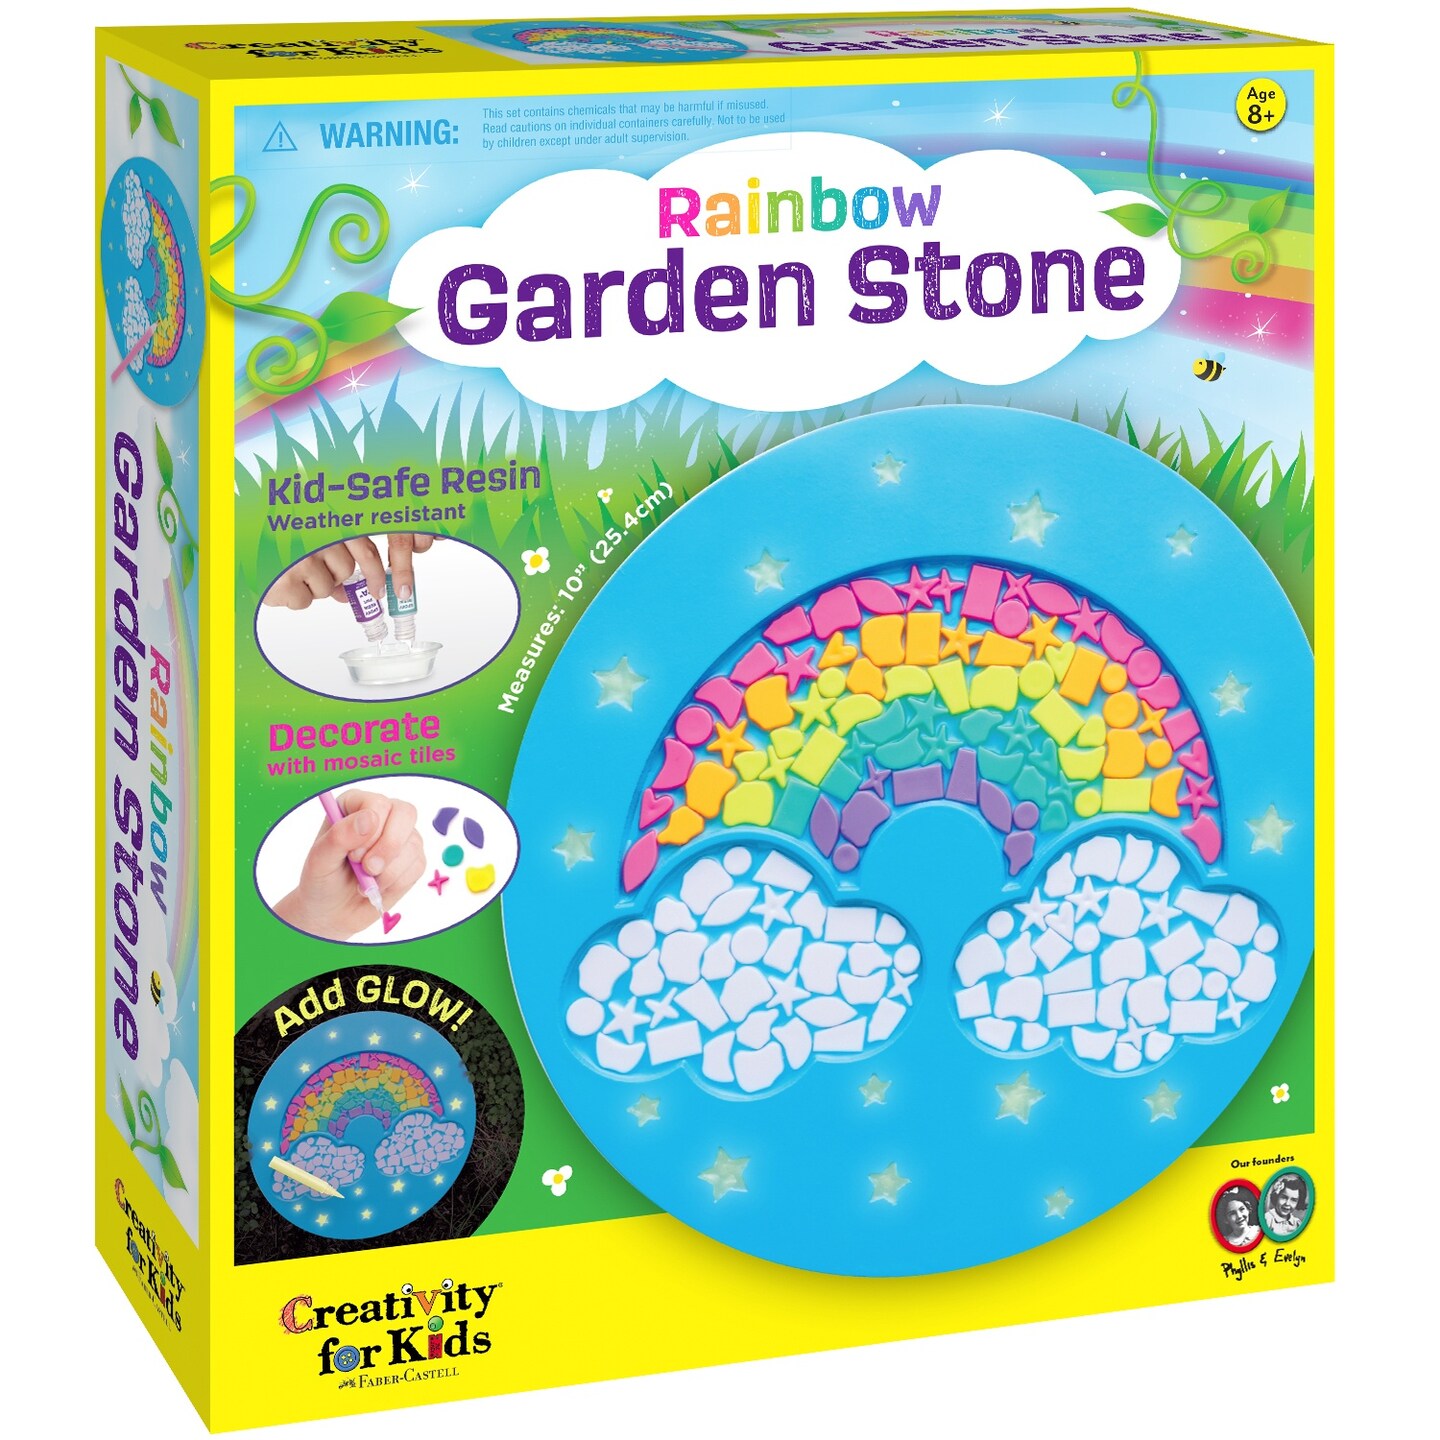 Creativity For Kids Rainbow Garden Stone Kit